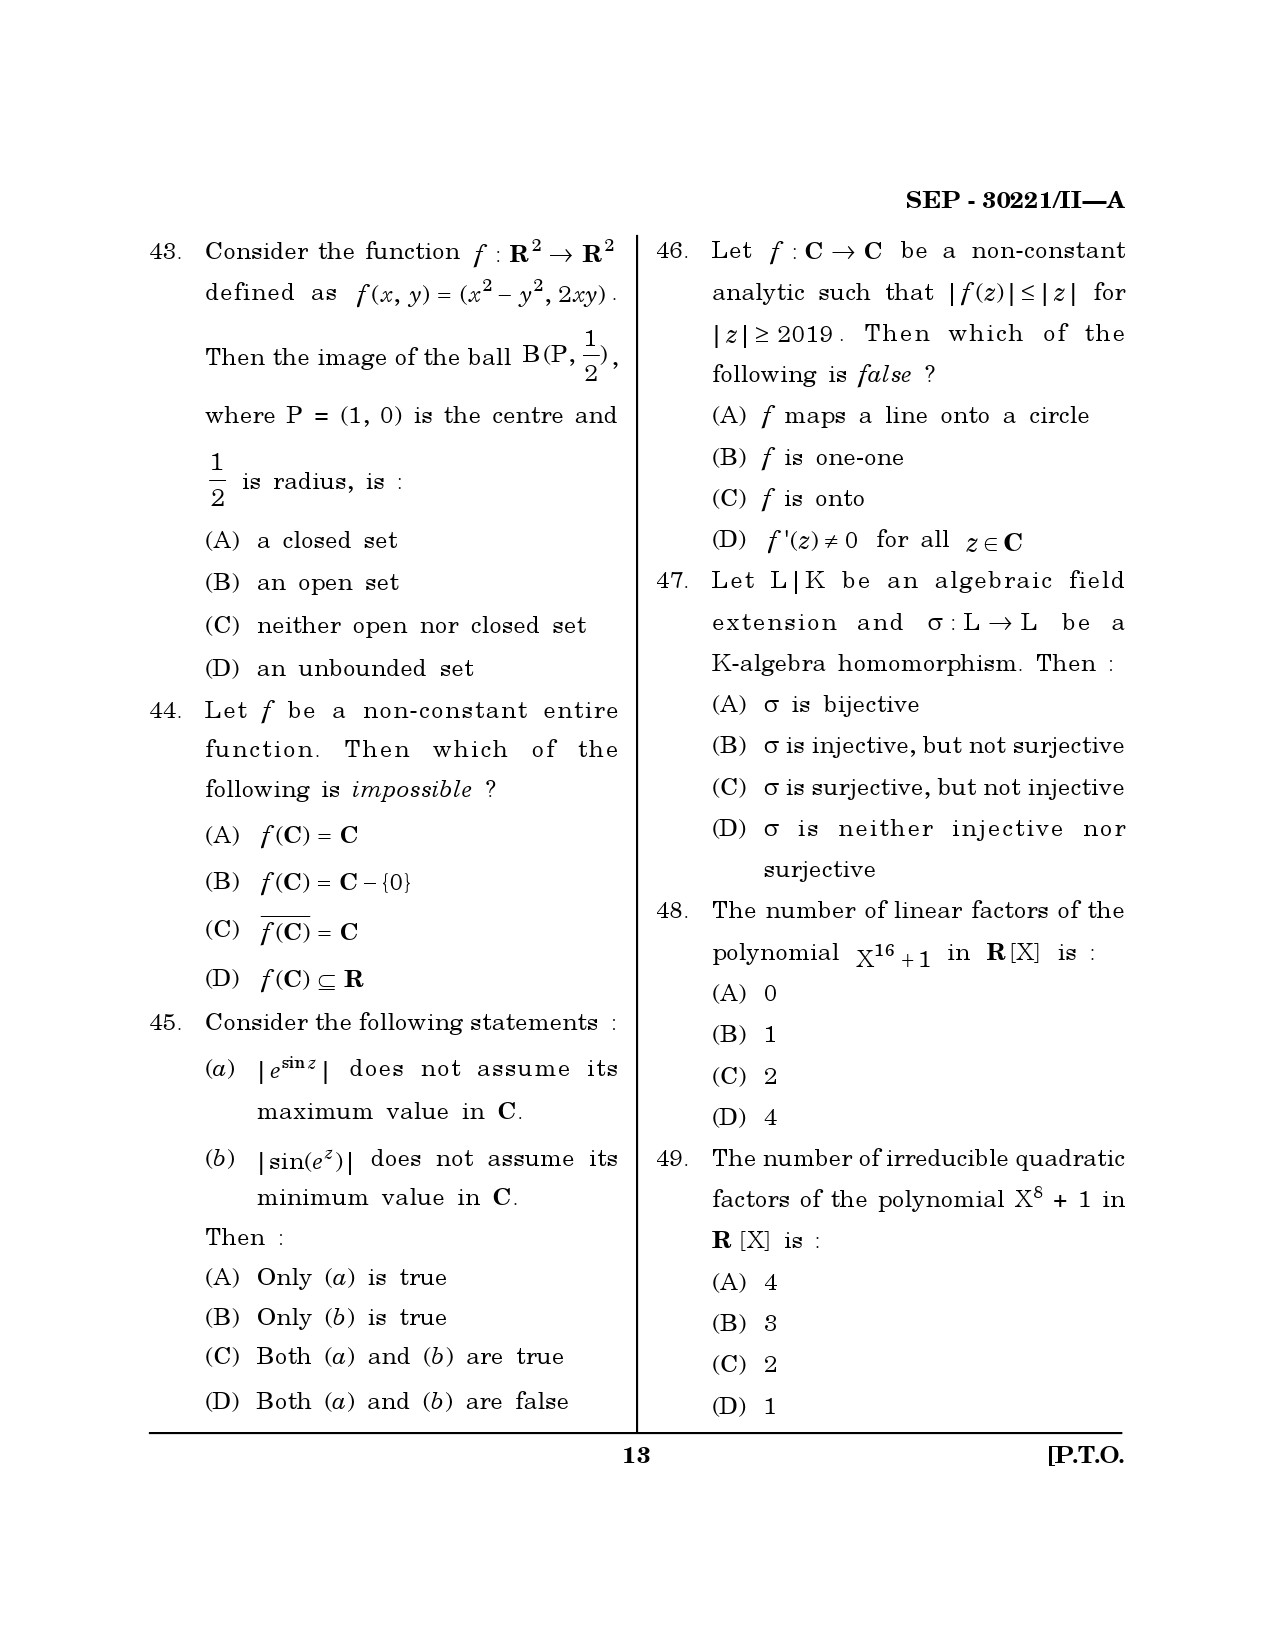 Maharashtra SET Mathematical Sciences Exam Question Paper September 2021 12